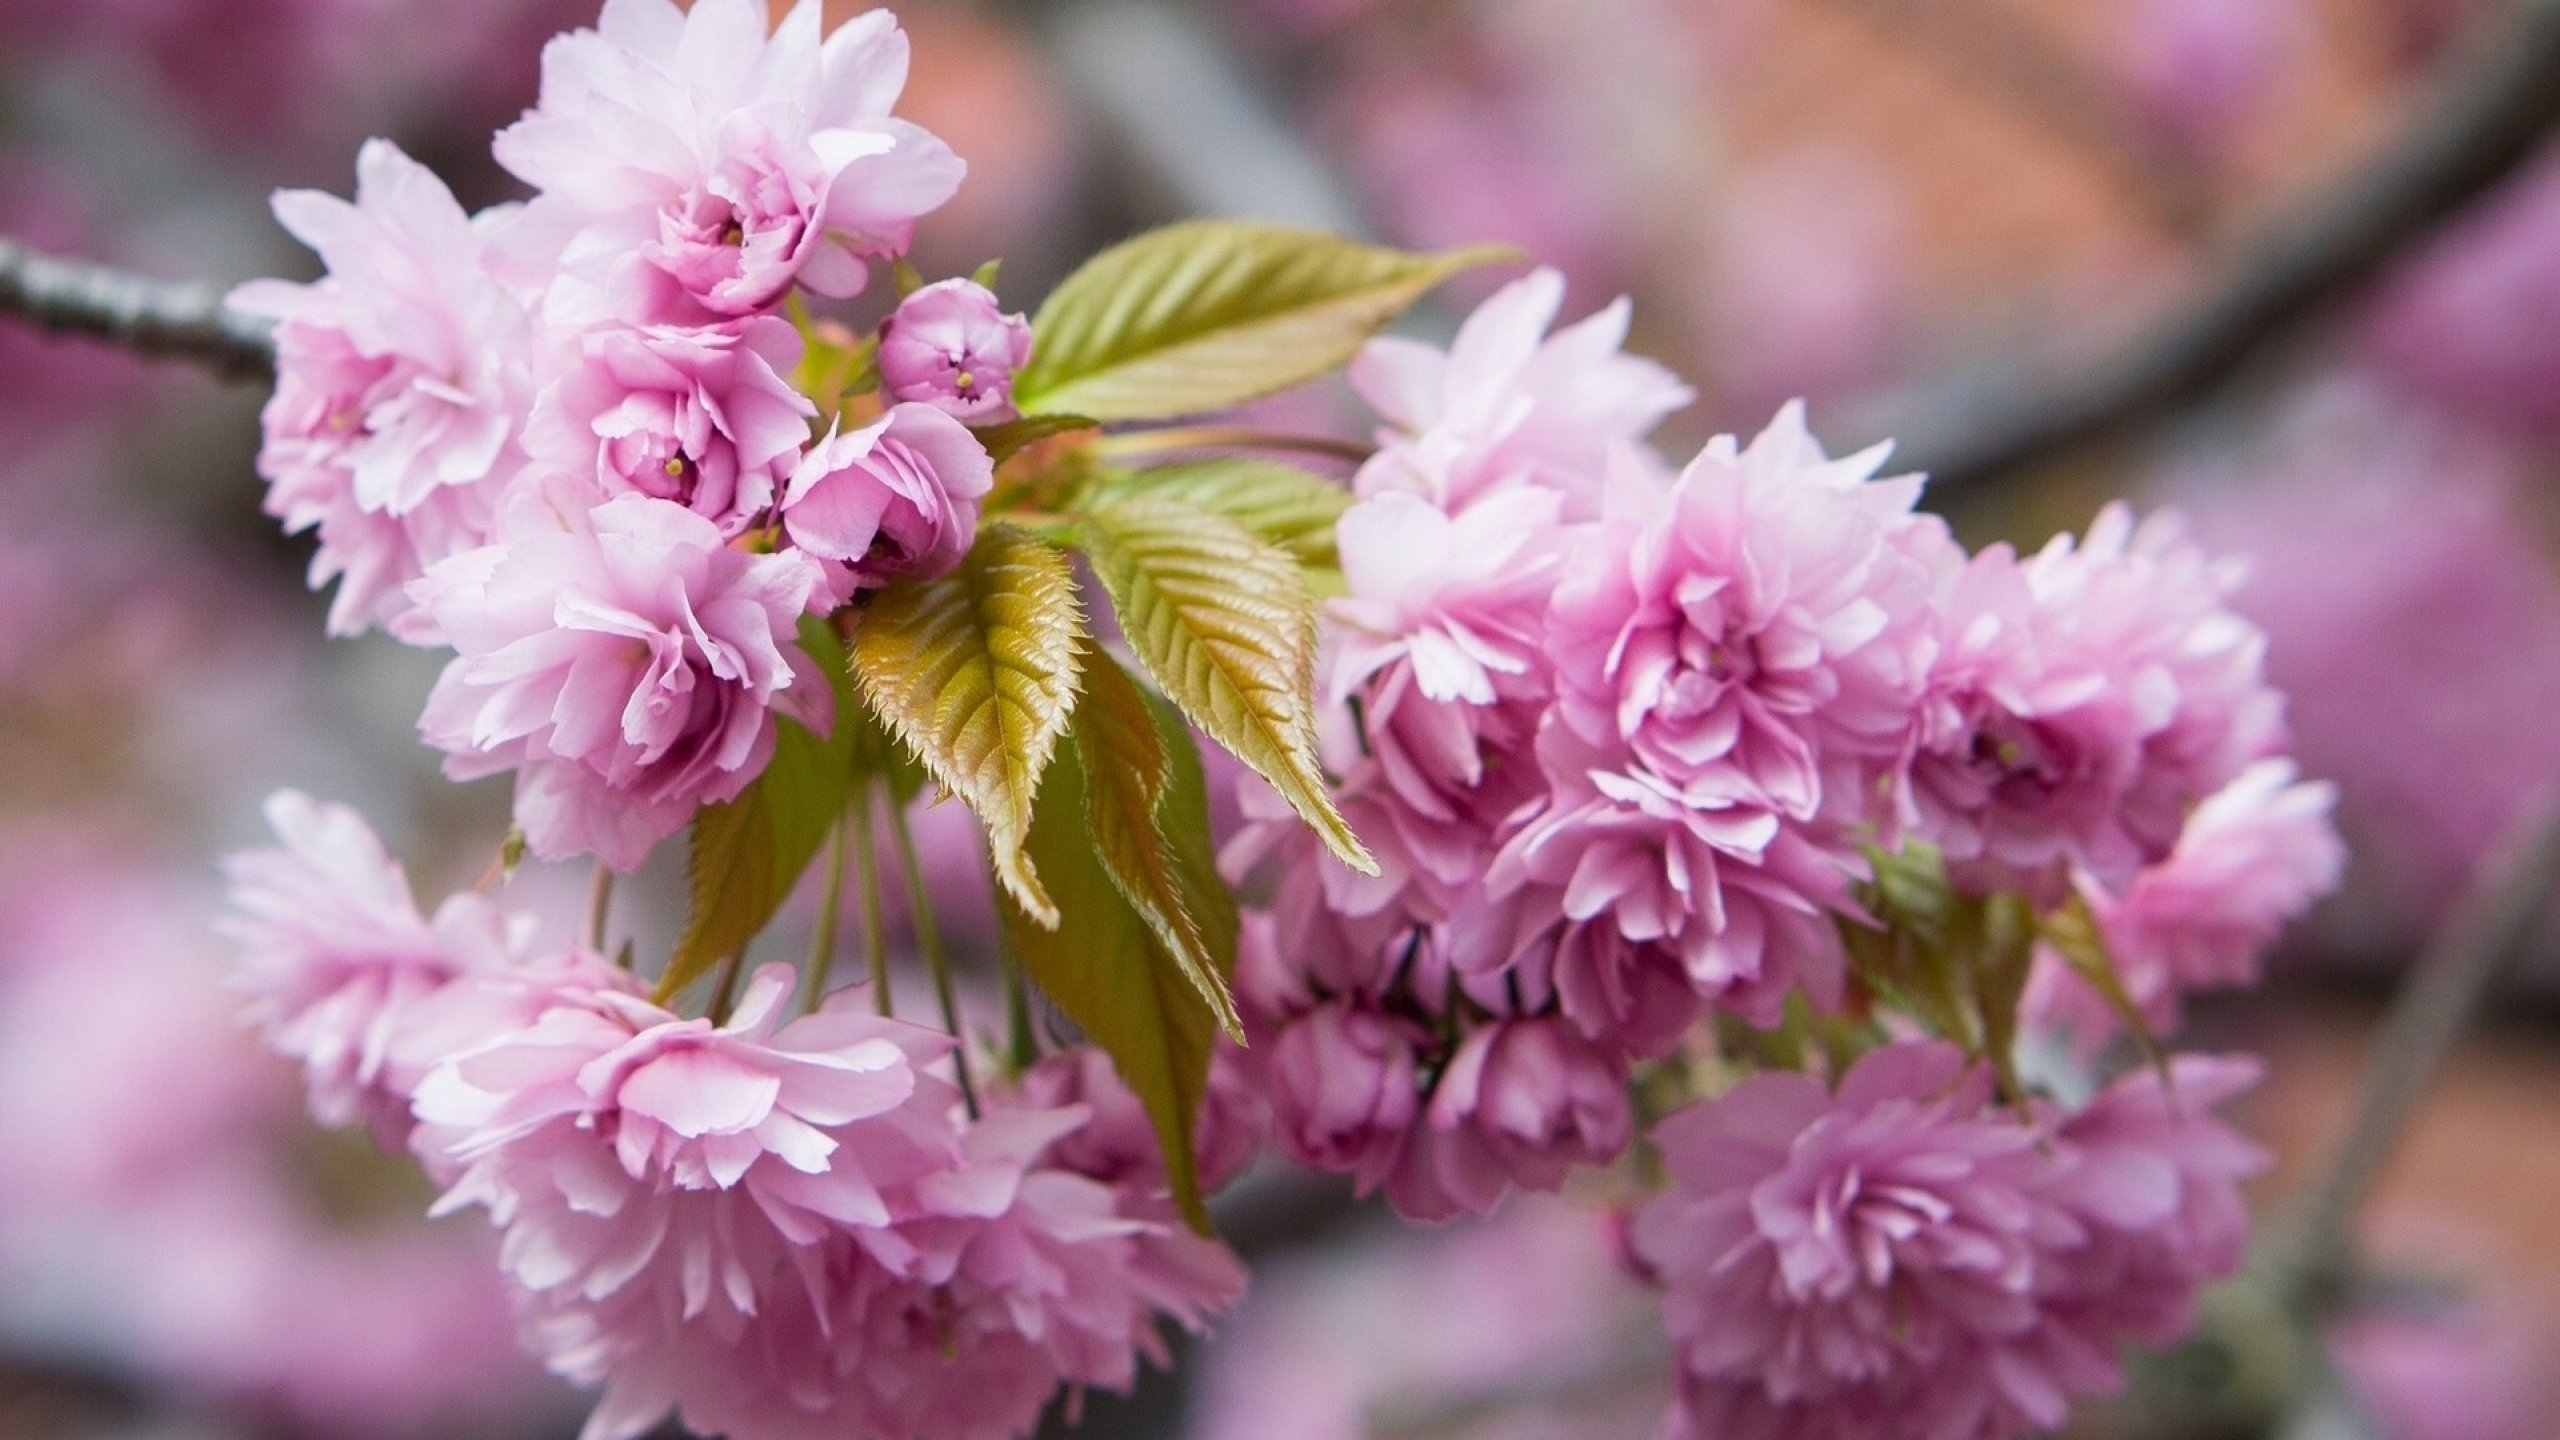 Обои апрель на рабочий стол красивые. Сакура Розеа плена. Весенние цветы. Красивые весенние цветы.